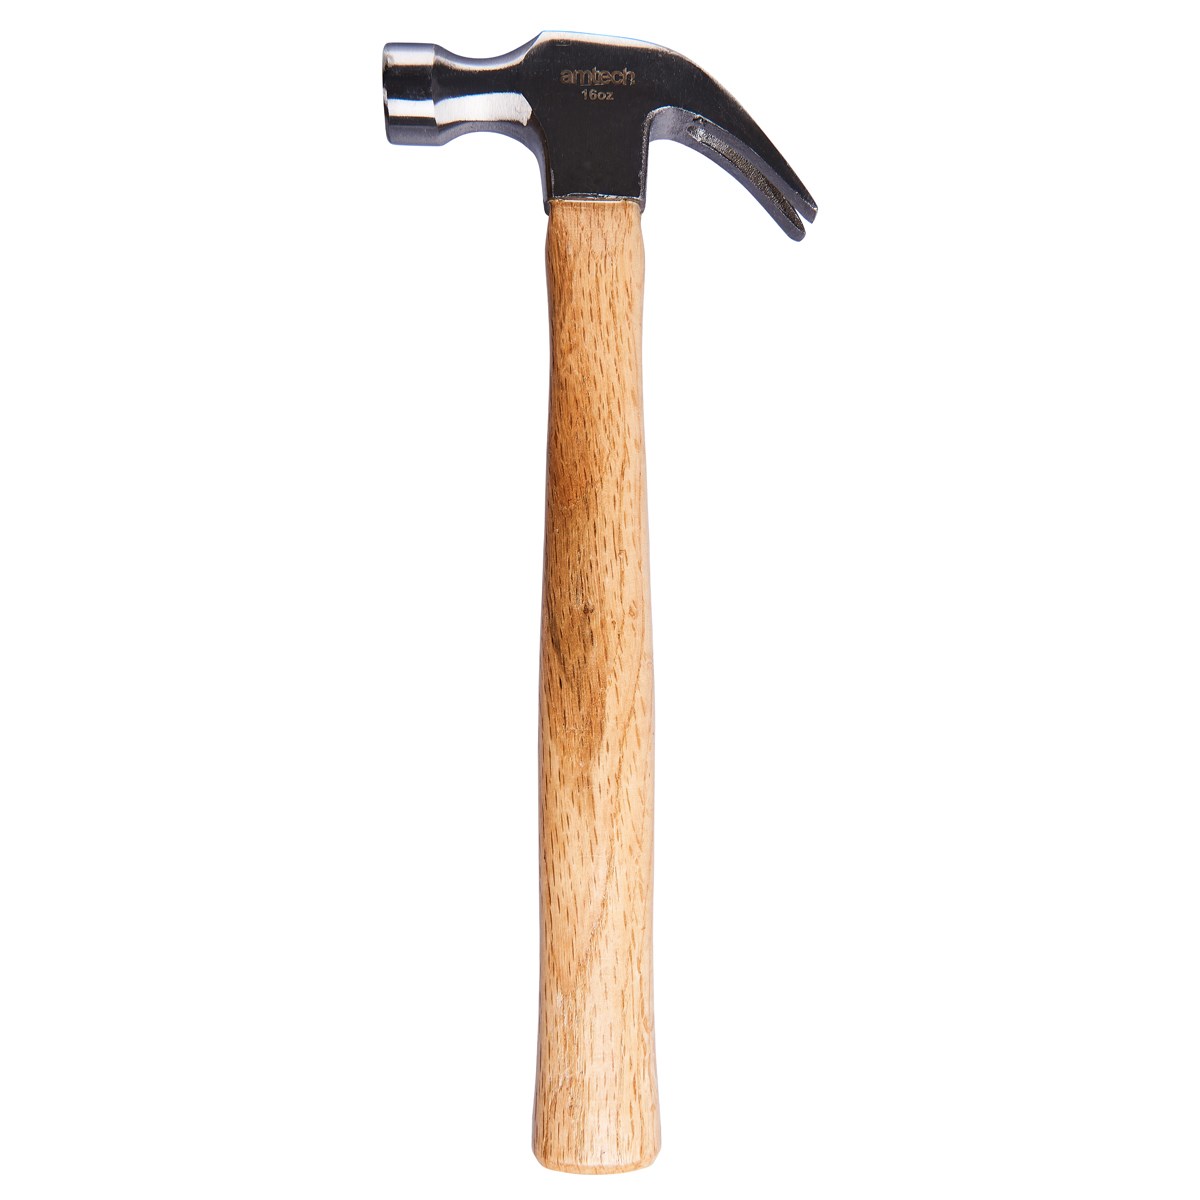 16Oz Claw Hammer Wooden Shaft Amtech A0400